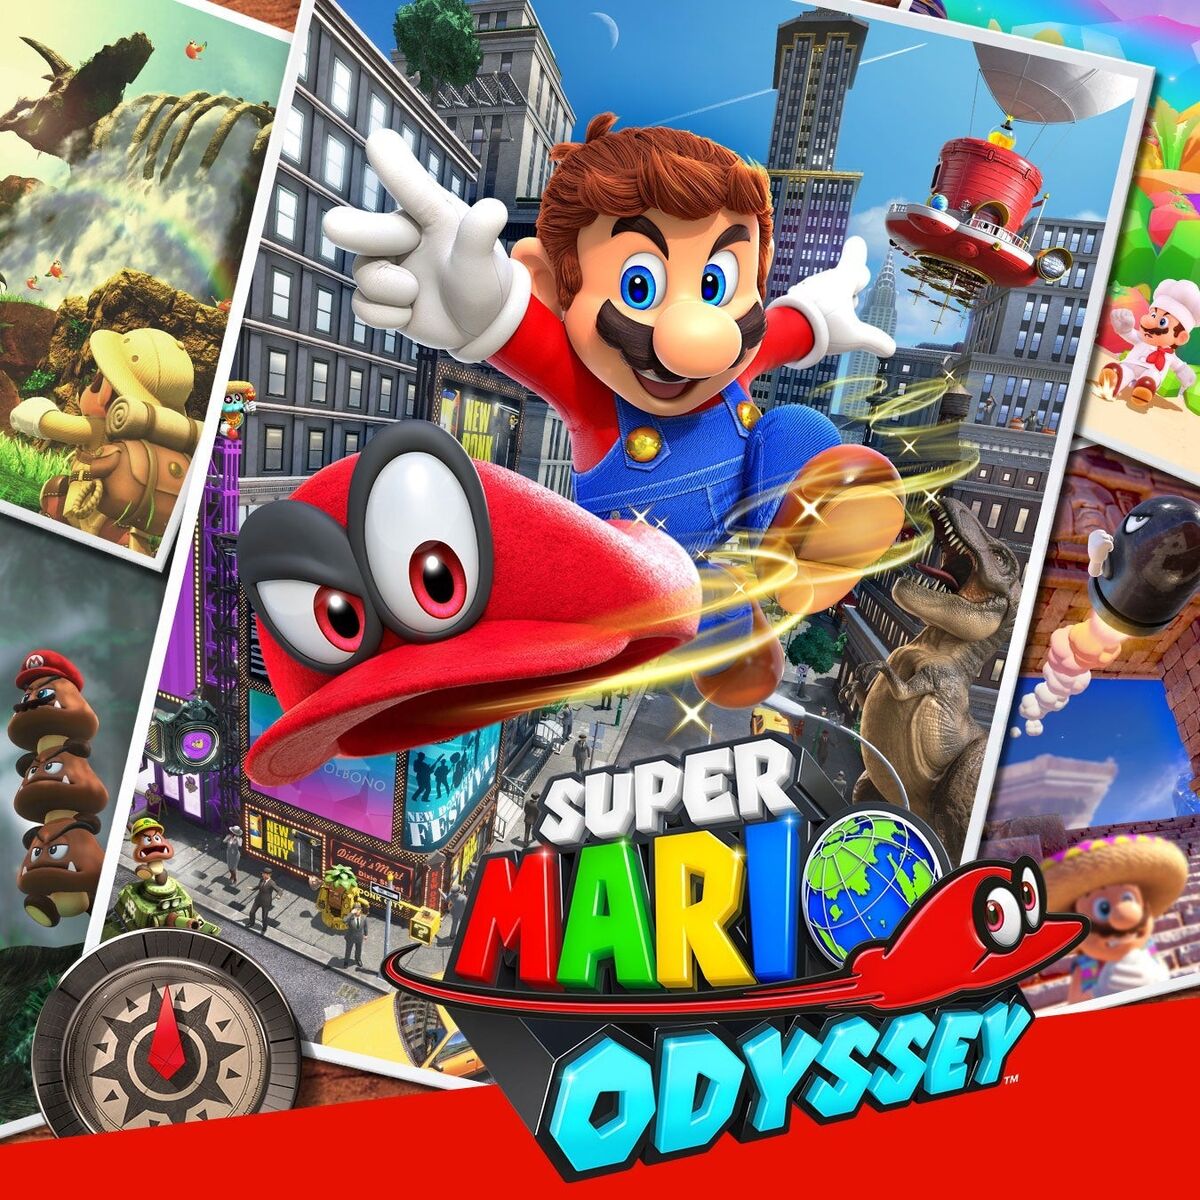 Super Mario Odyssey | Vesterandfriends Wiki | Fandom